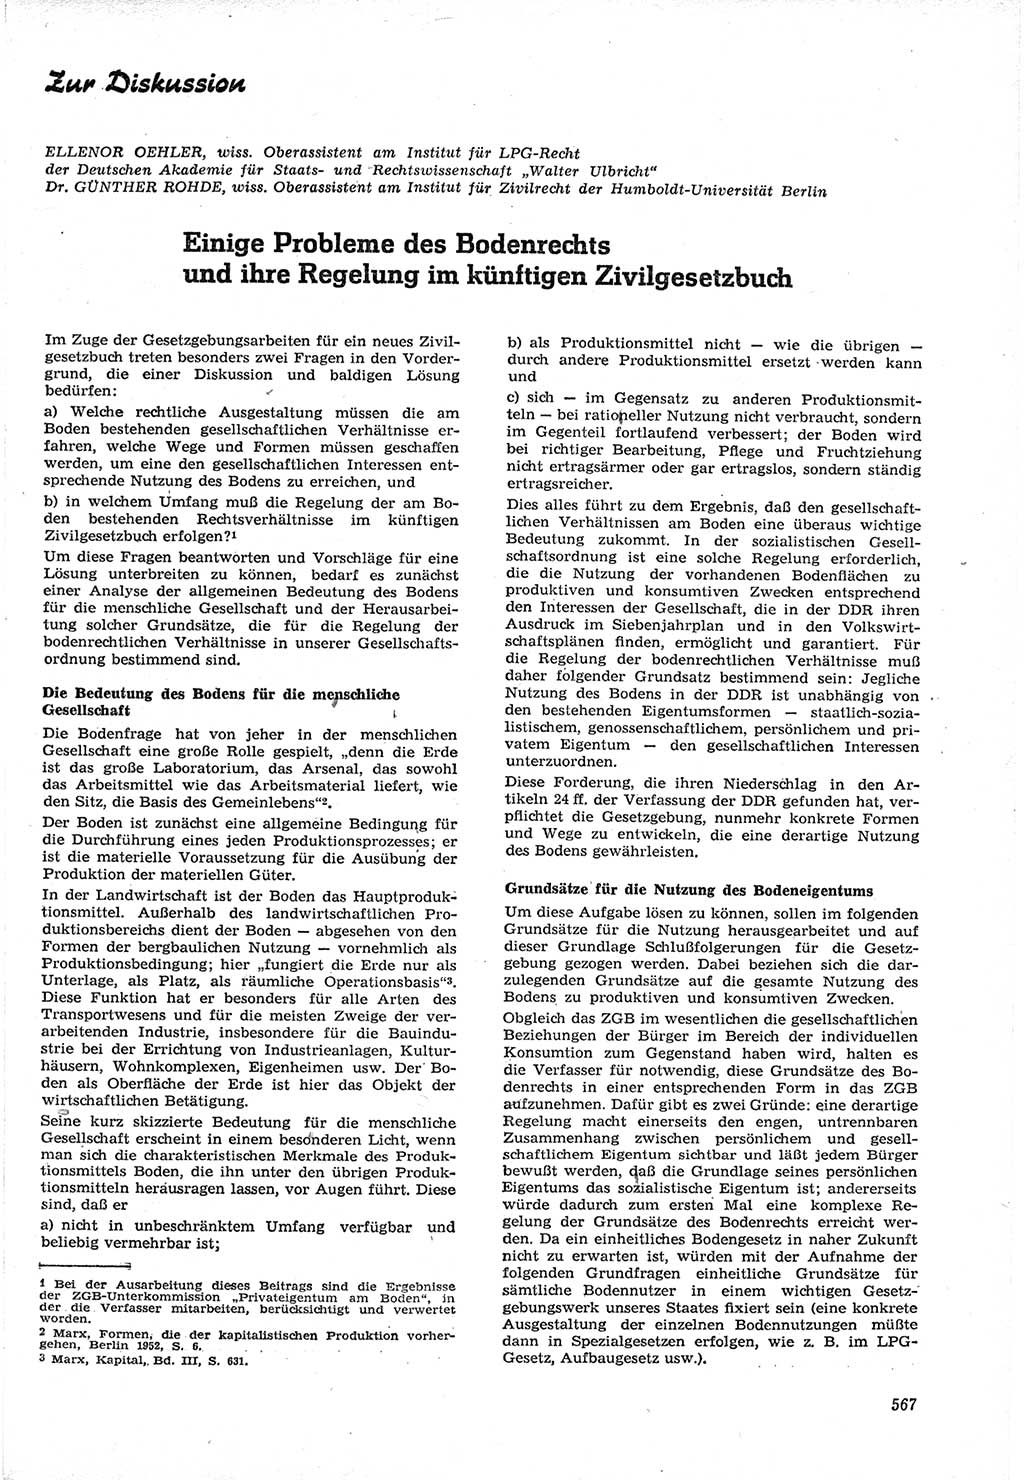 Neue Justiz (NJ), Zeitschrift für Recht und Rechtswissenschaft [Deutsche Demokratische Republik (DDR)], 15. Jahrgang 1961, Seite 567 (NJ DDR 1961, S. 567)